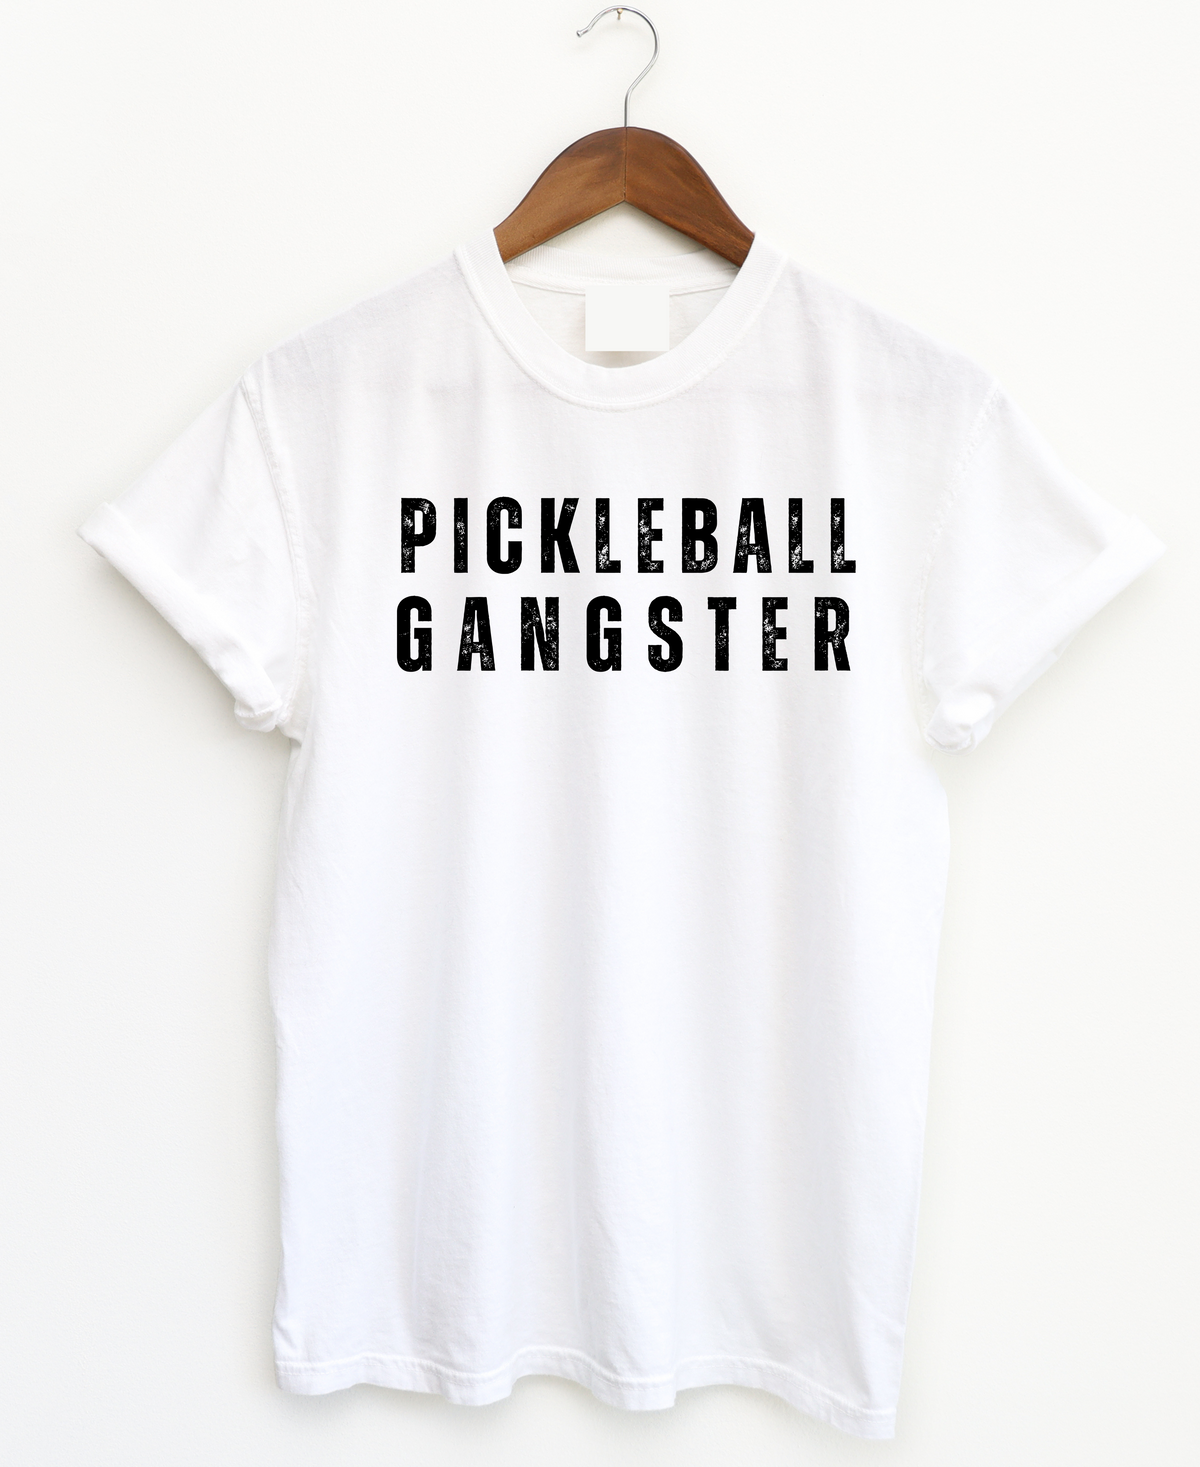 Pickleball Gangster Tee